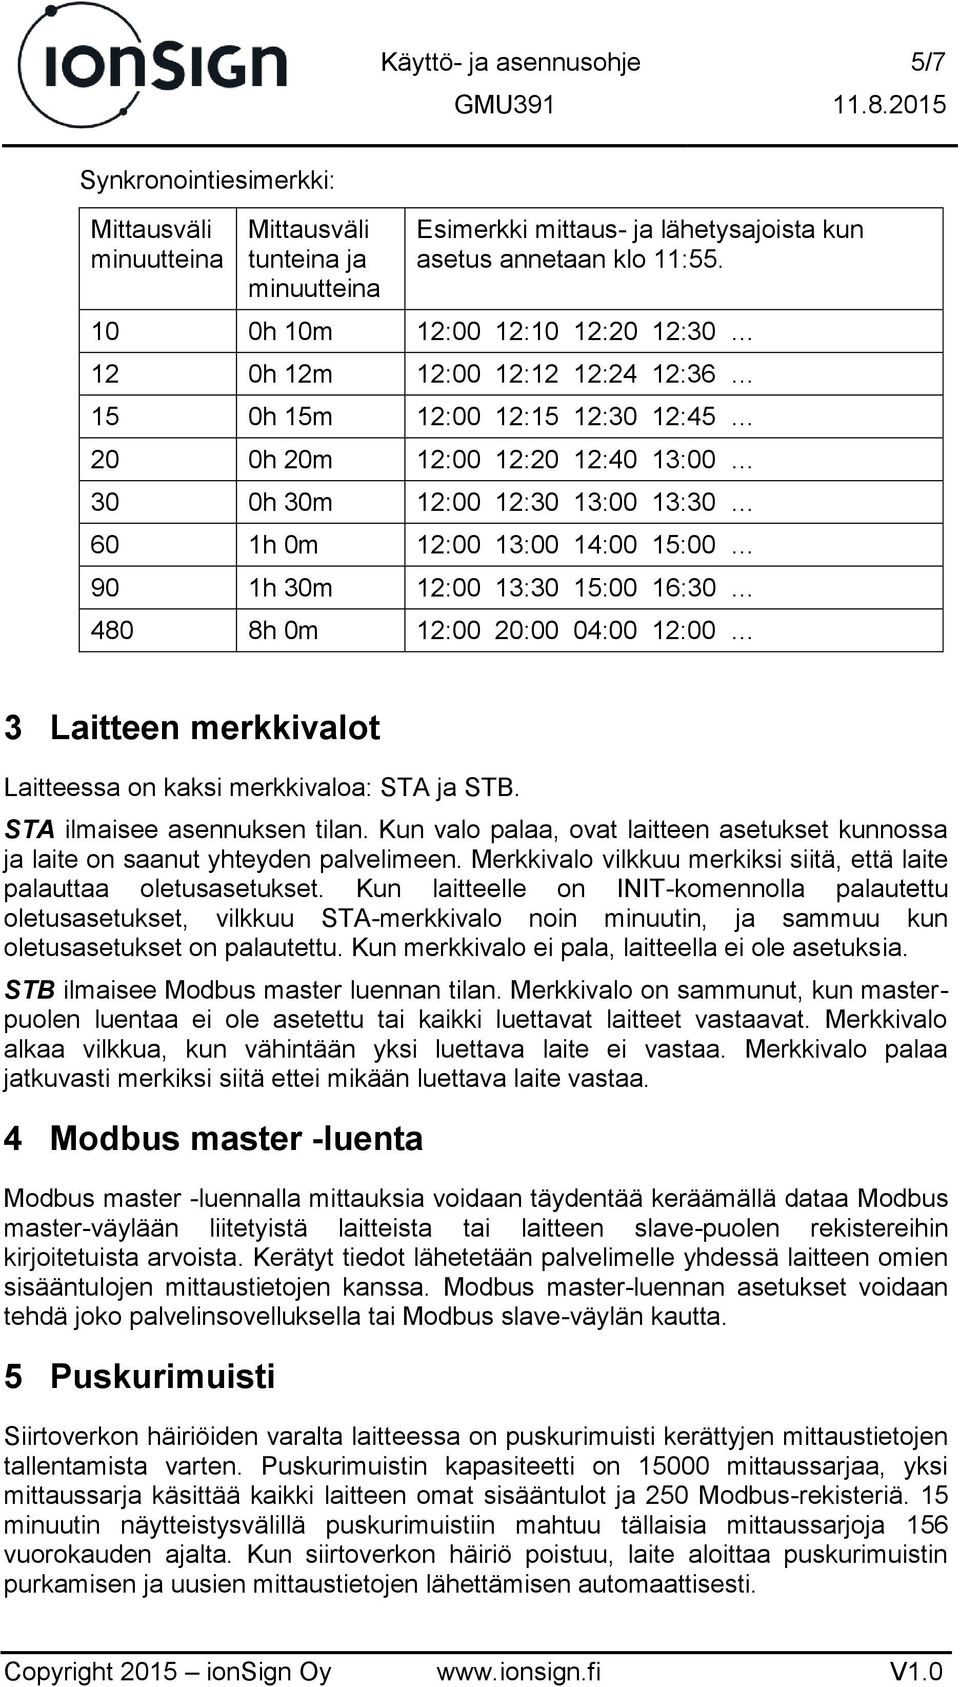 15:00 90 1h 30m 12:00 13:30 15:00 16:30 480 8h 0m 12:00 20:00 04:00 12:00 3 Laitteen merkkivalot Laitteessa on kaksi merkkivaloa: STA ja STB. STA ilmaisee asennuksen tilan.